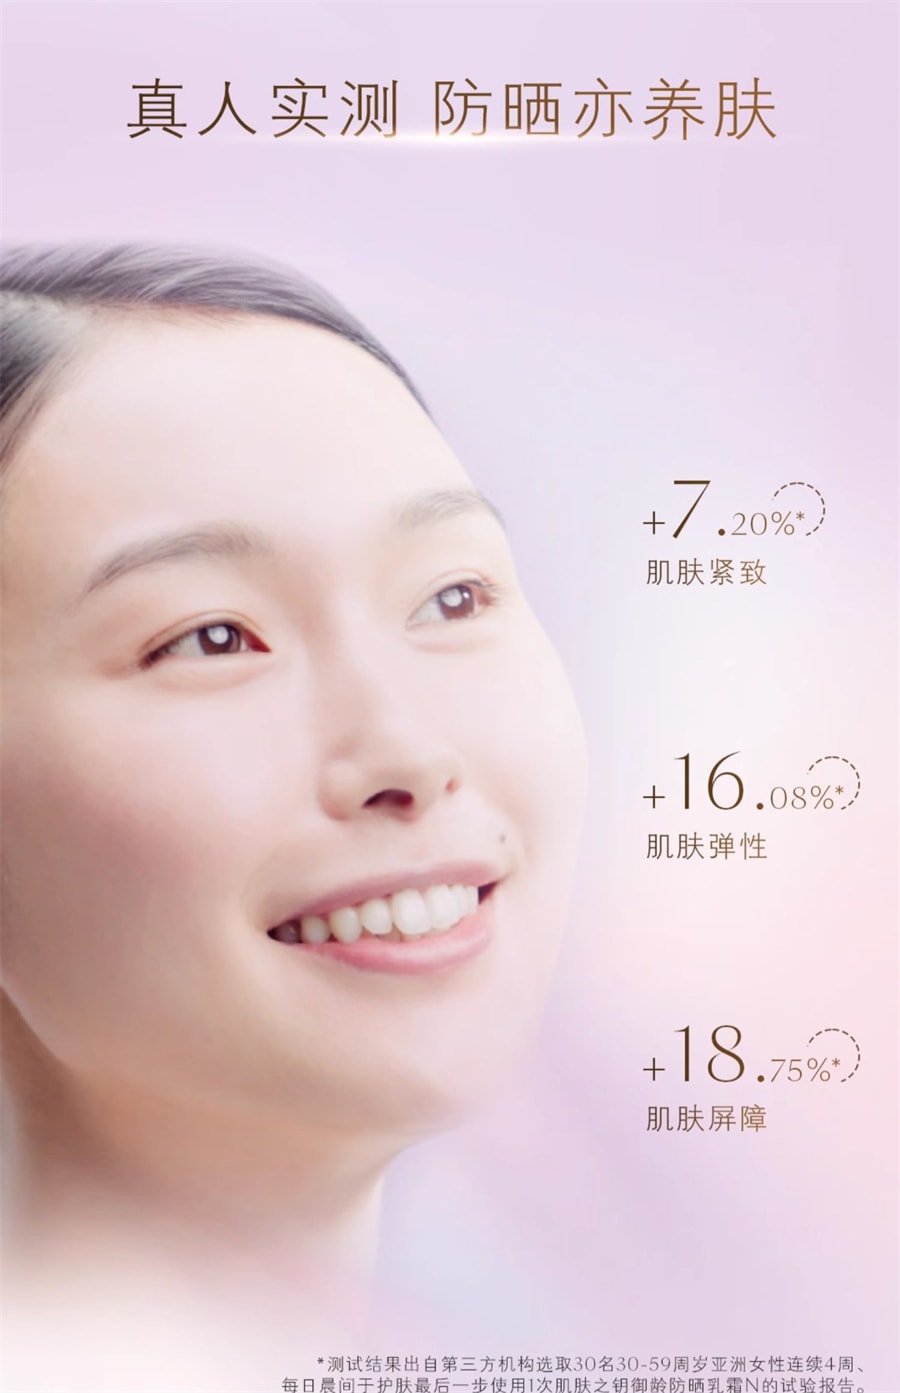 【日本直郵】CLE DE PEAU BEAUTE CPB 肌膚之鑰日本版 新版防曬 禦齡高倍防曬乳 SPF50+ PA++++ 50g